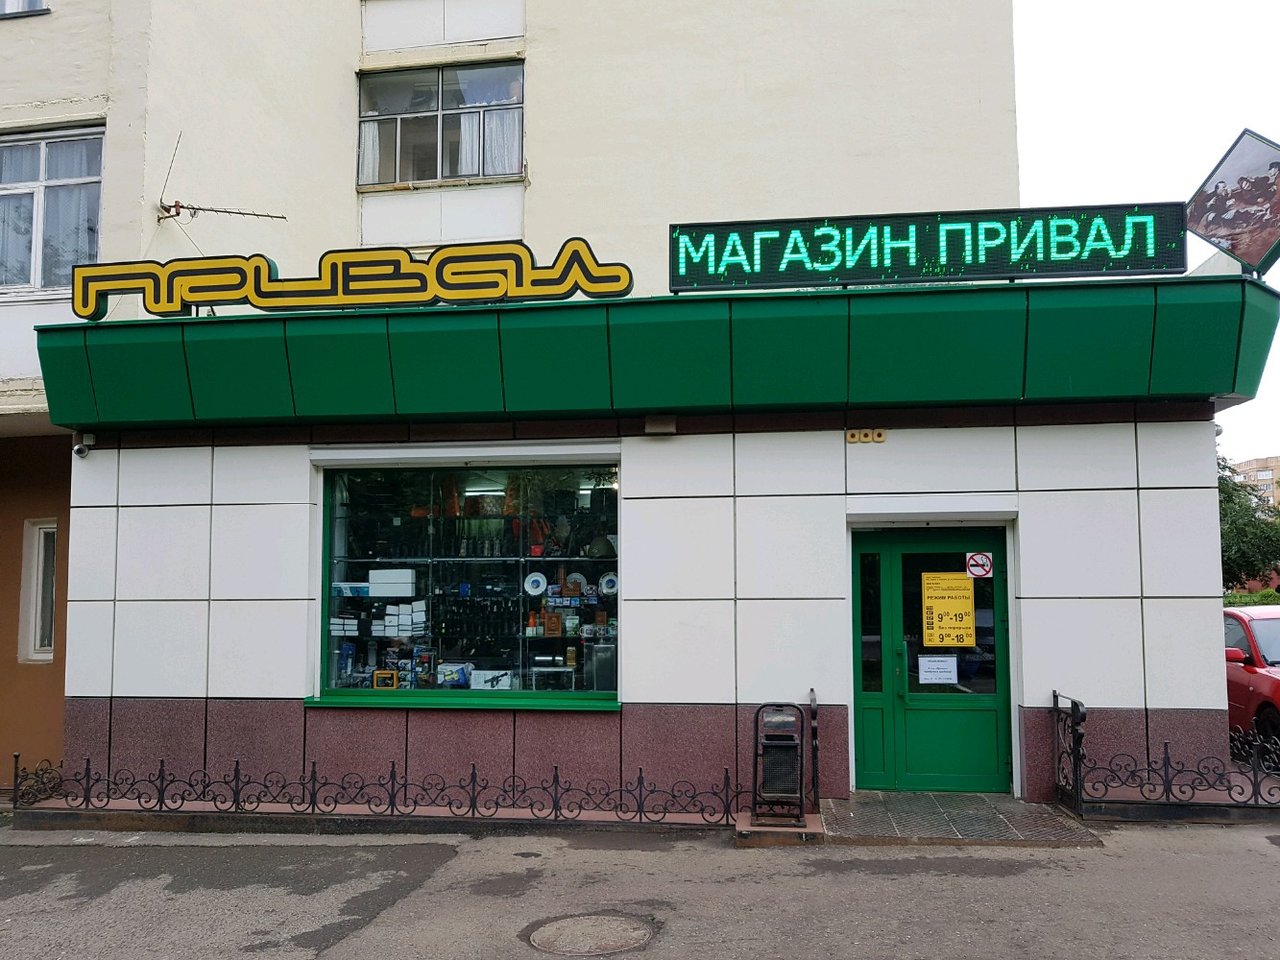 Магазин снаряжения "Привал" на Богдана Хмельницкого в Саранске